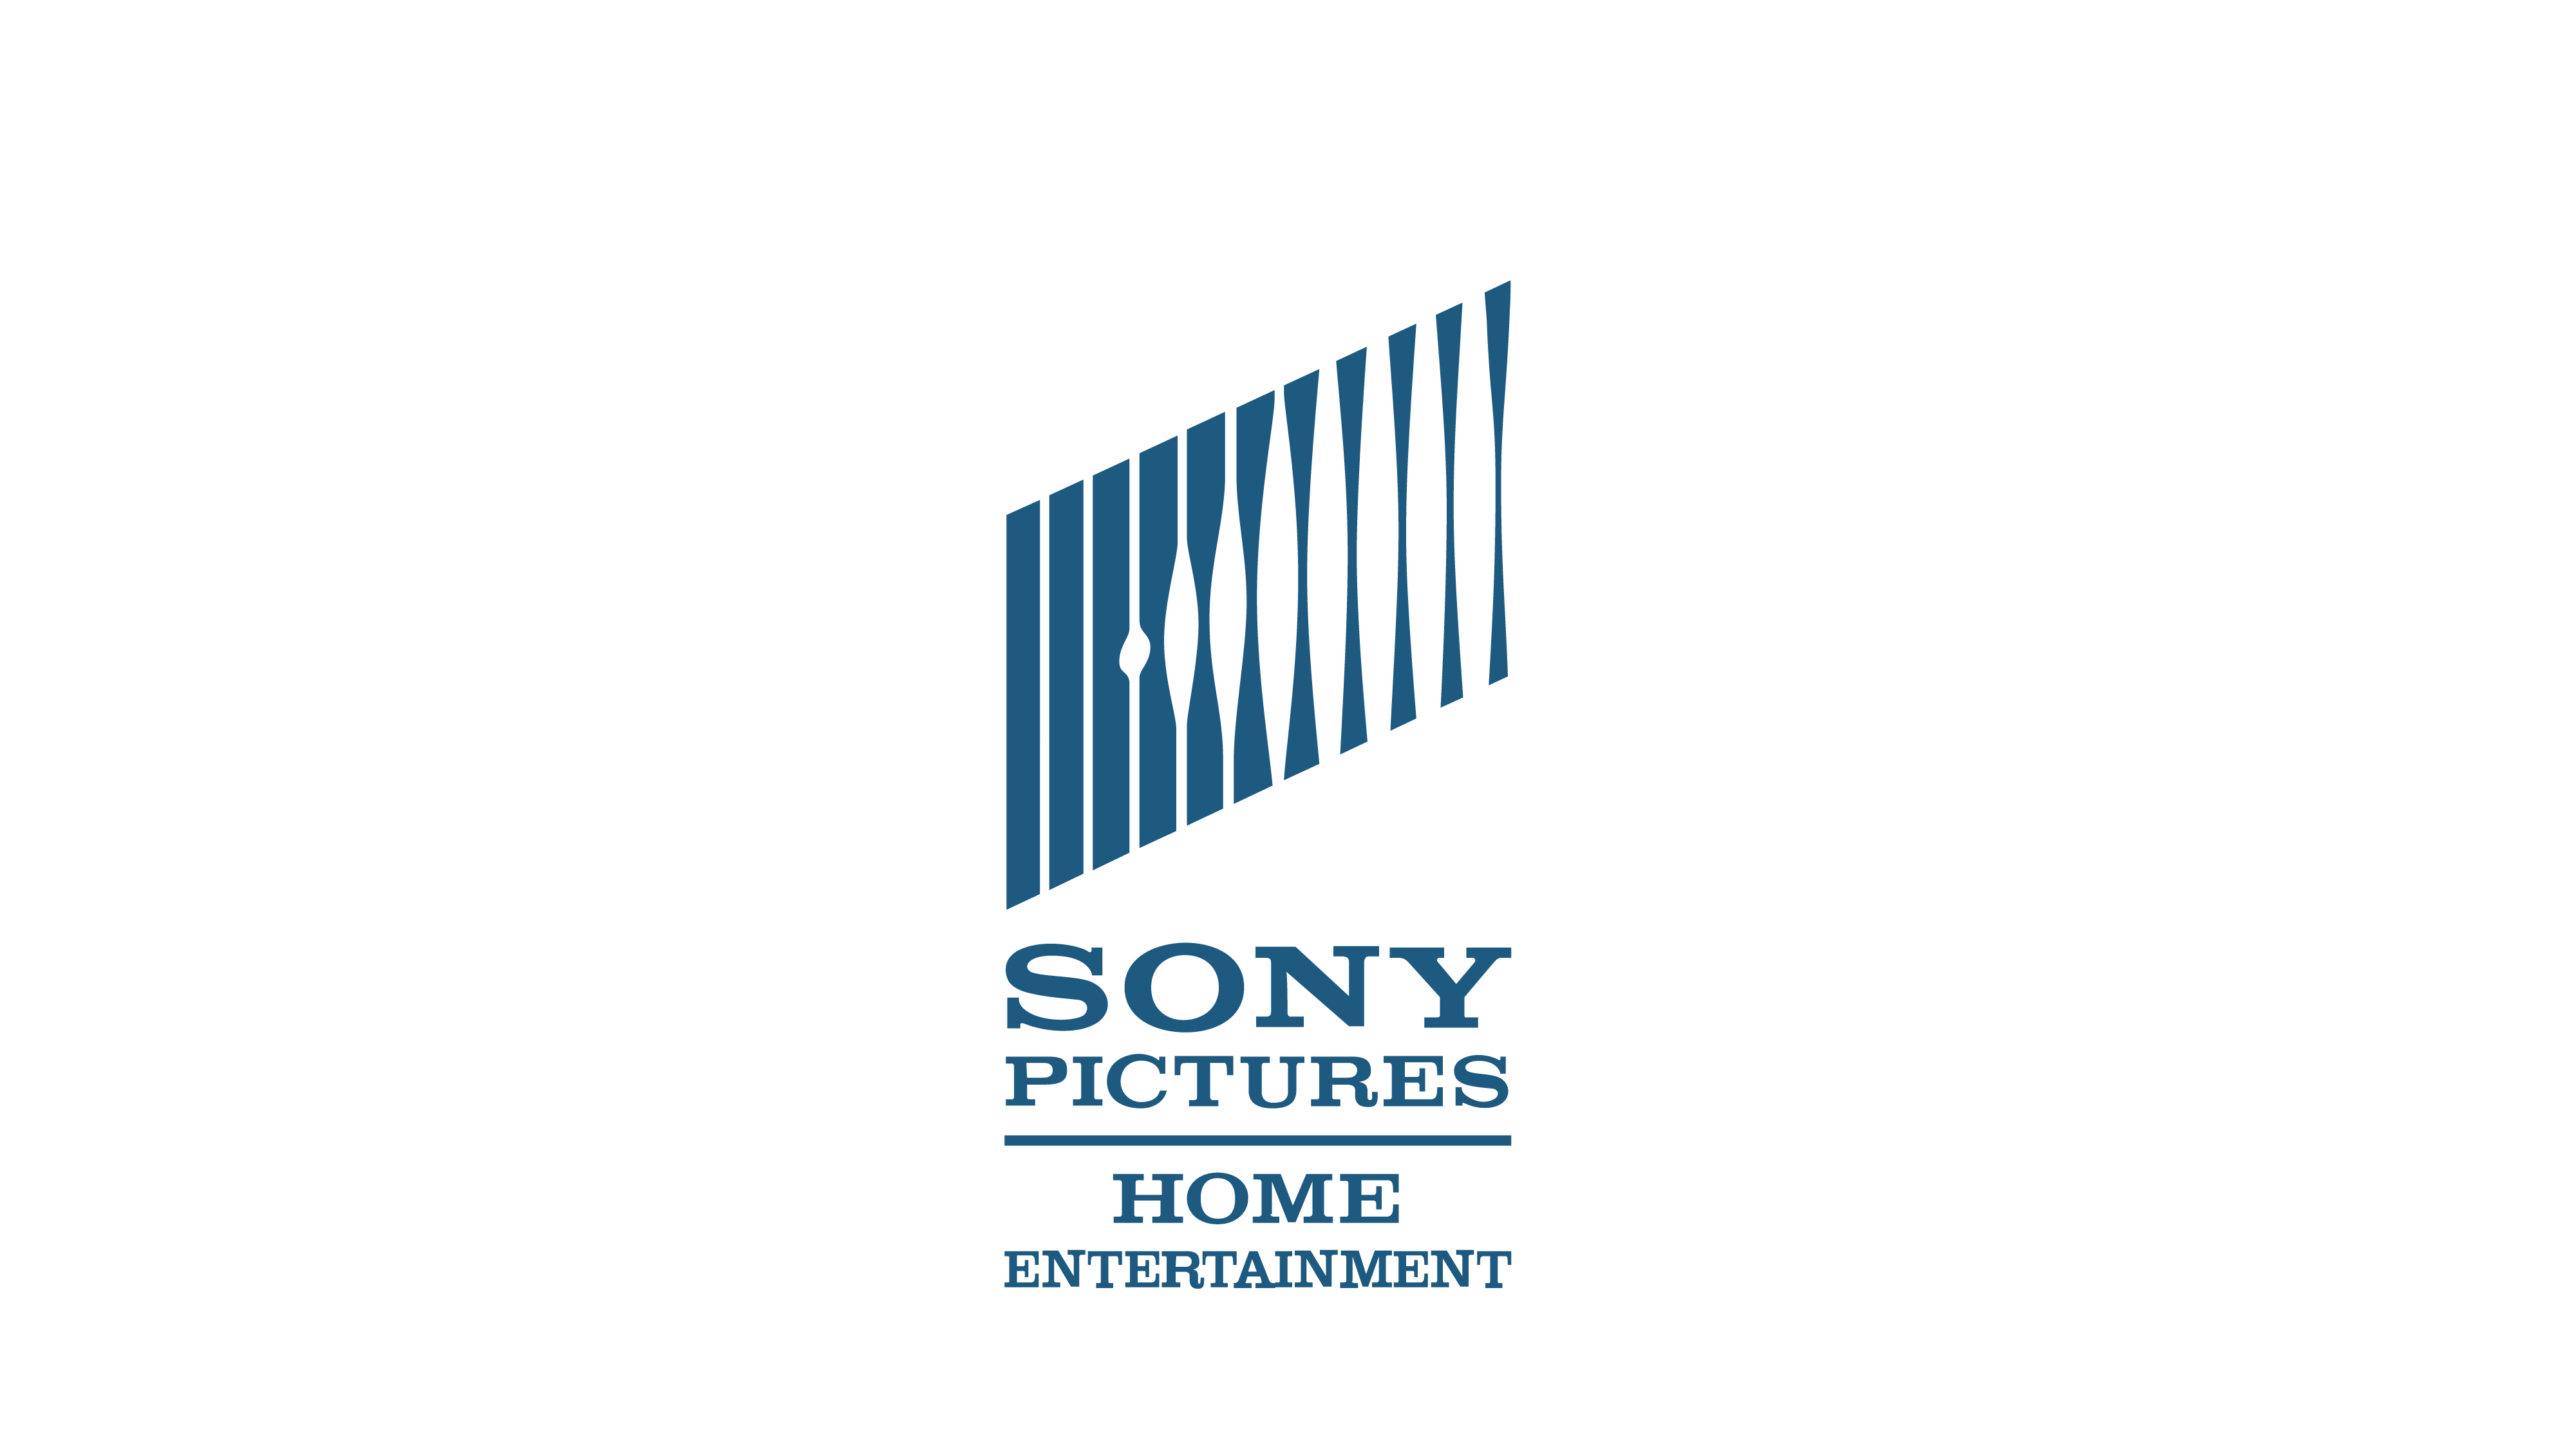 Sony pictures. Sony Кинокомпания. Киностудия Sony pictures. Sony pictures логотип.